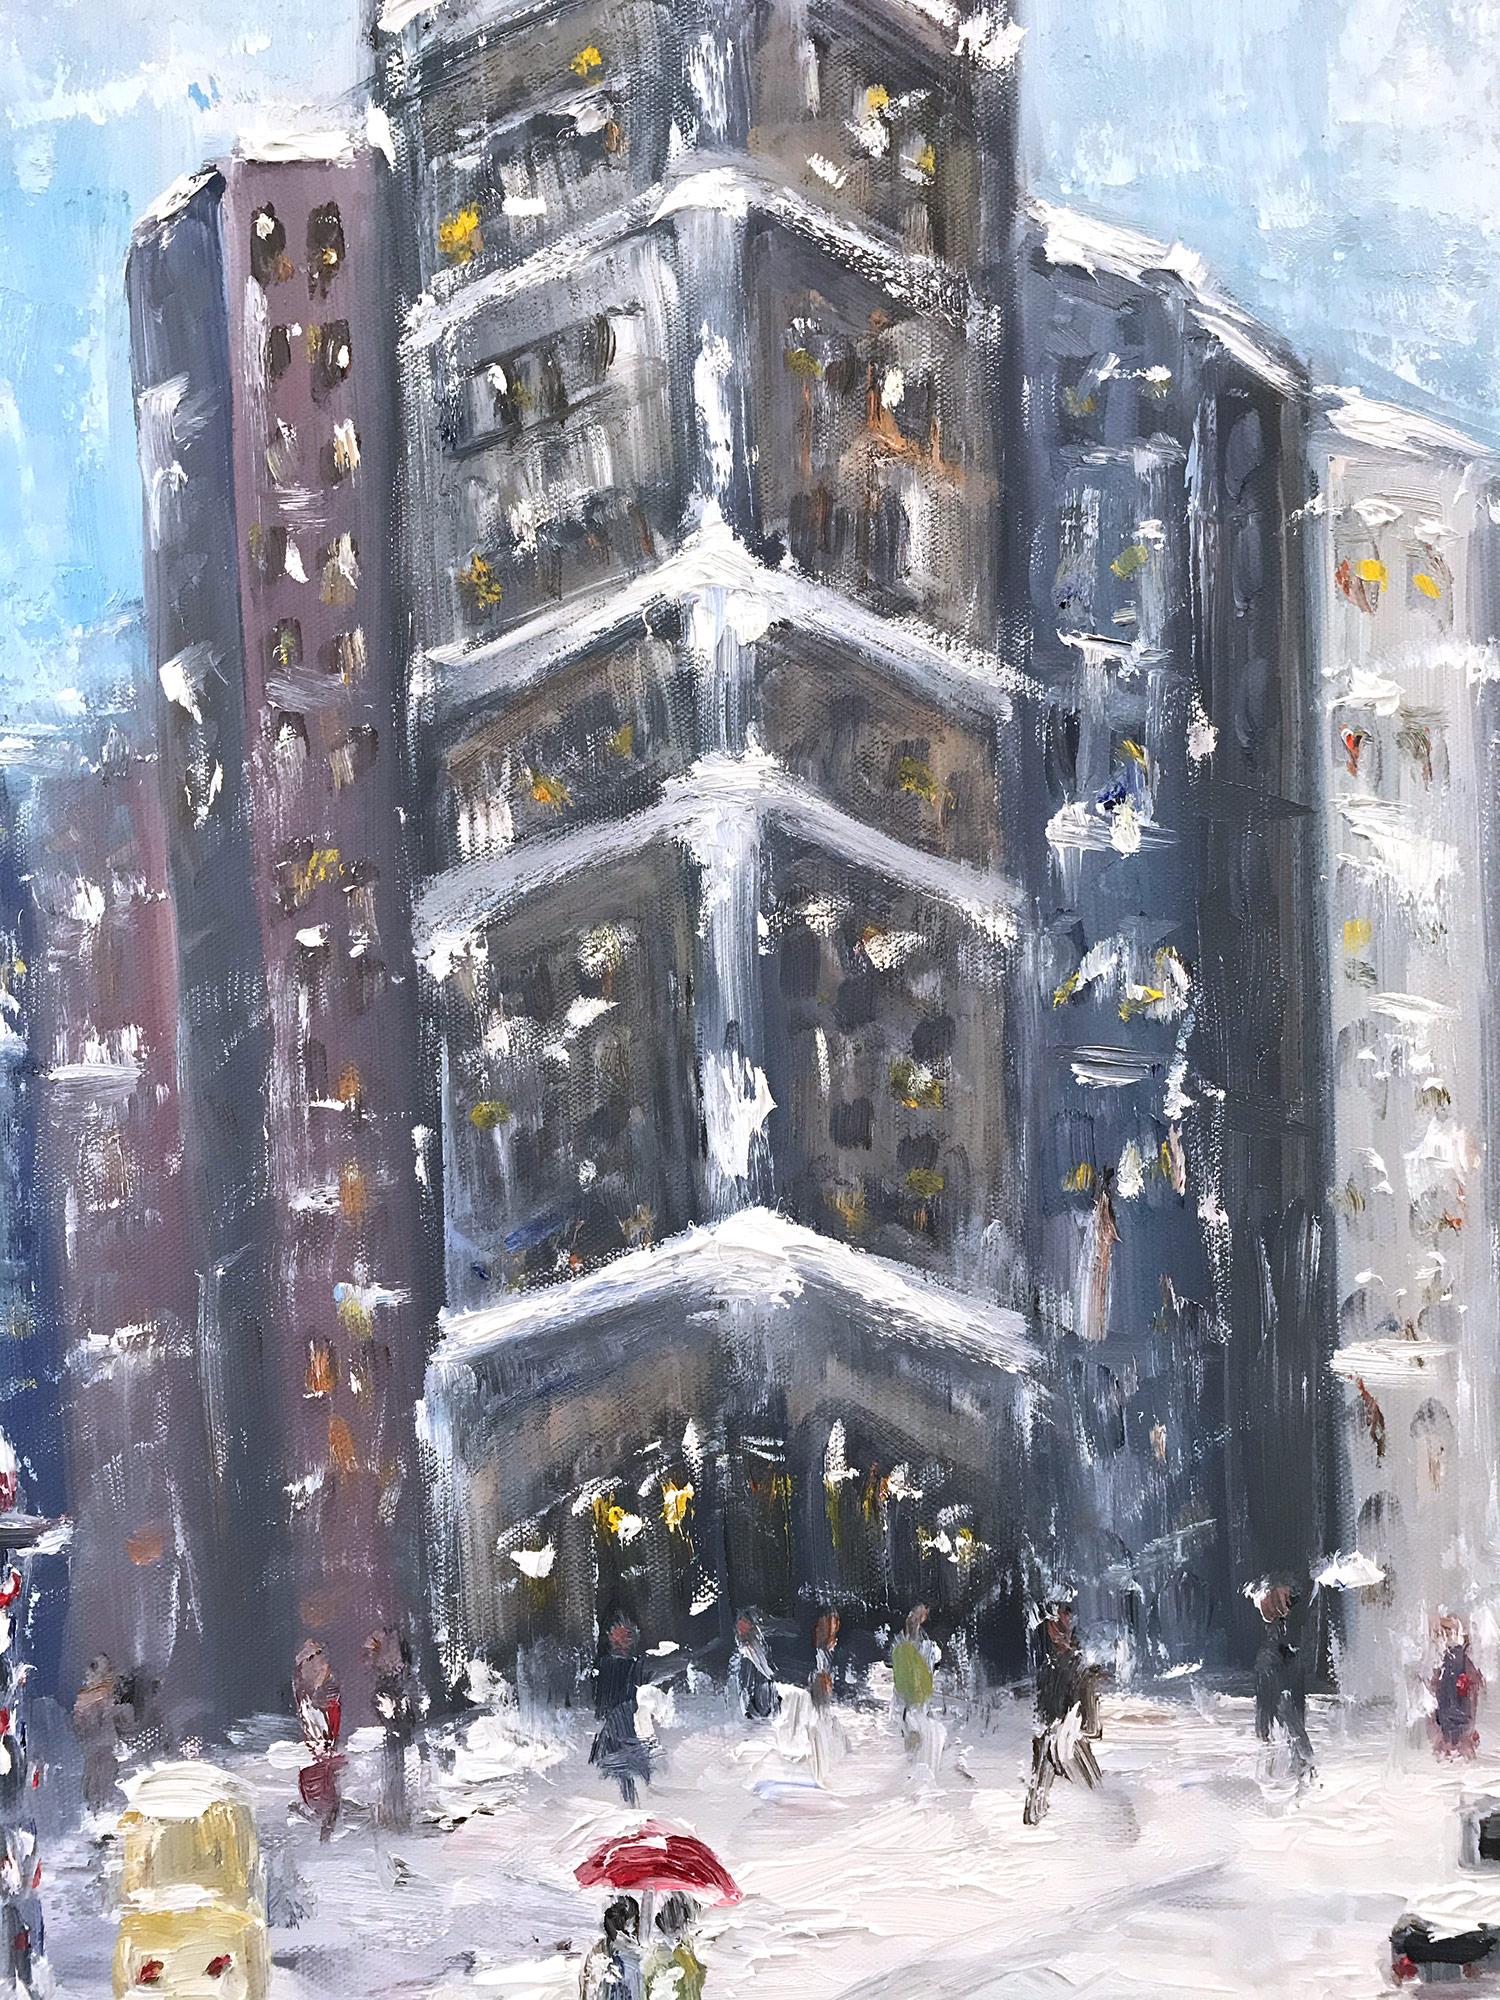 « Snow by Flatiron », peinture à l'huile impressionniste d'une scène de neige dans le style de Guy Wiggins  - Impressionnisme américain Painting par Cindy Shaoul